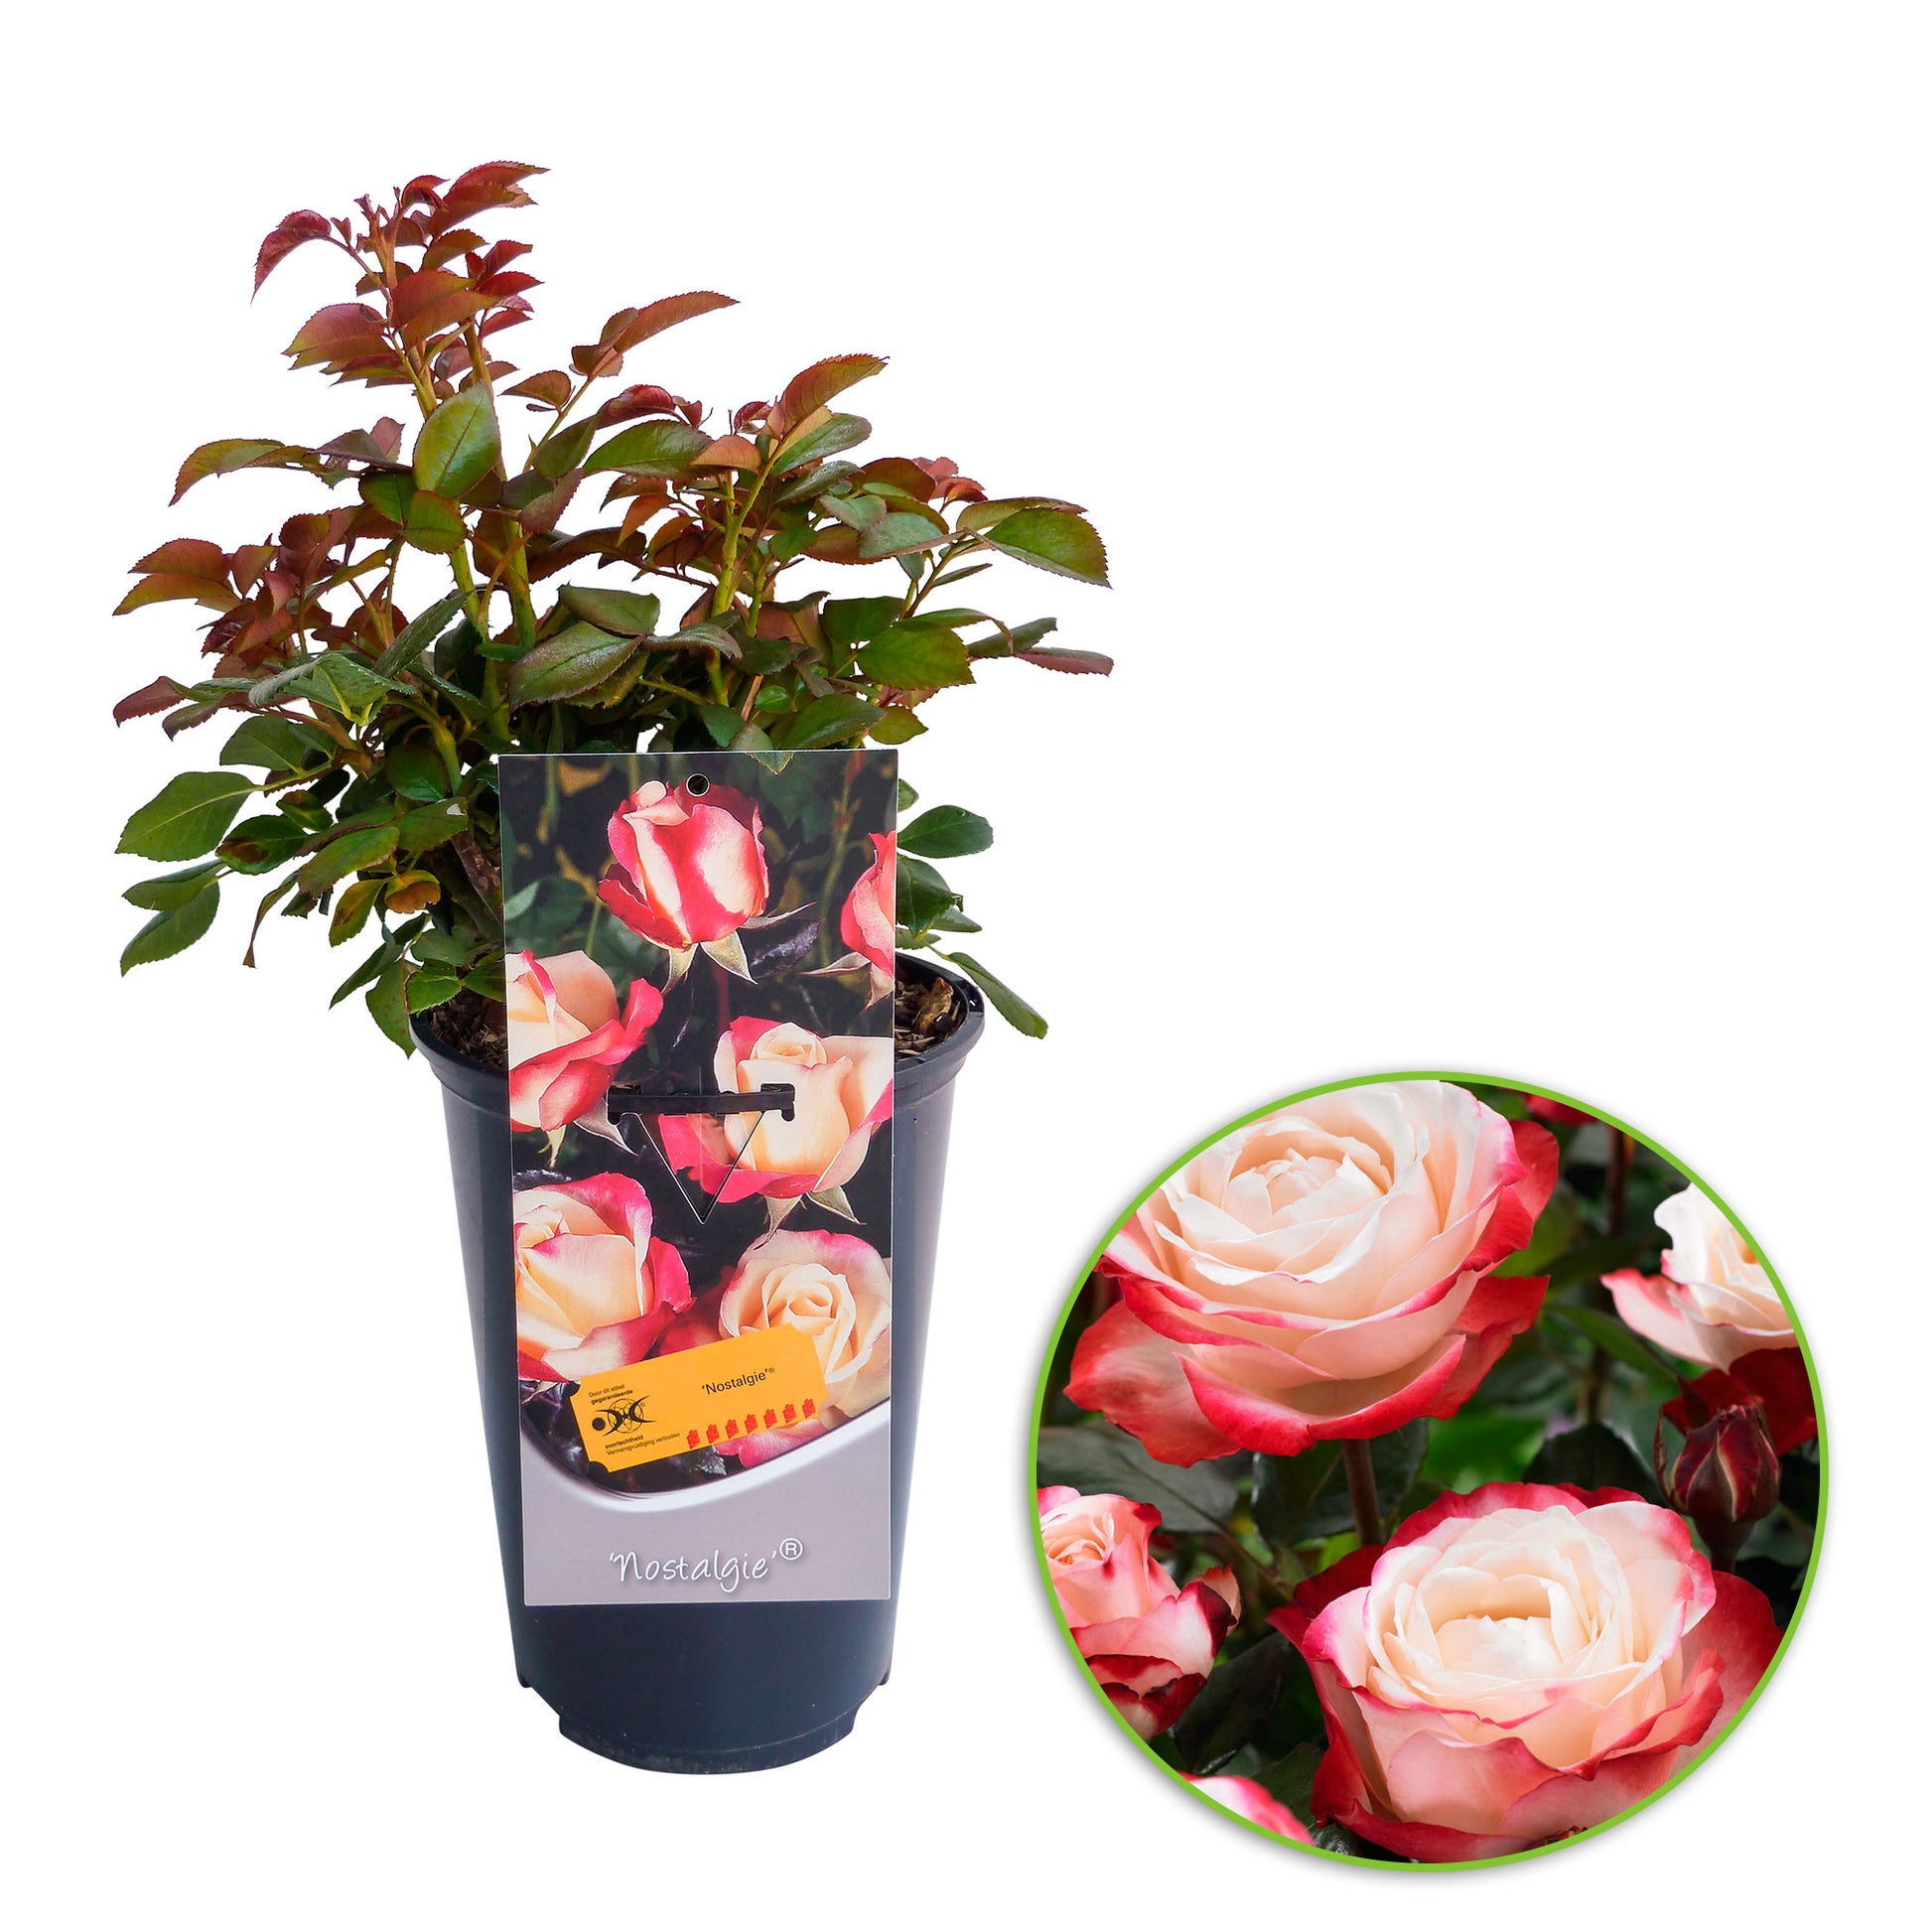 Rosa 'Nostalgie'® Großblütige Rose Creme-Rosa - Winterhart kaufen